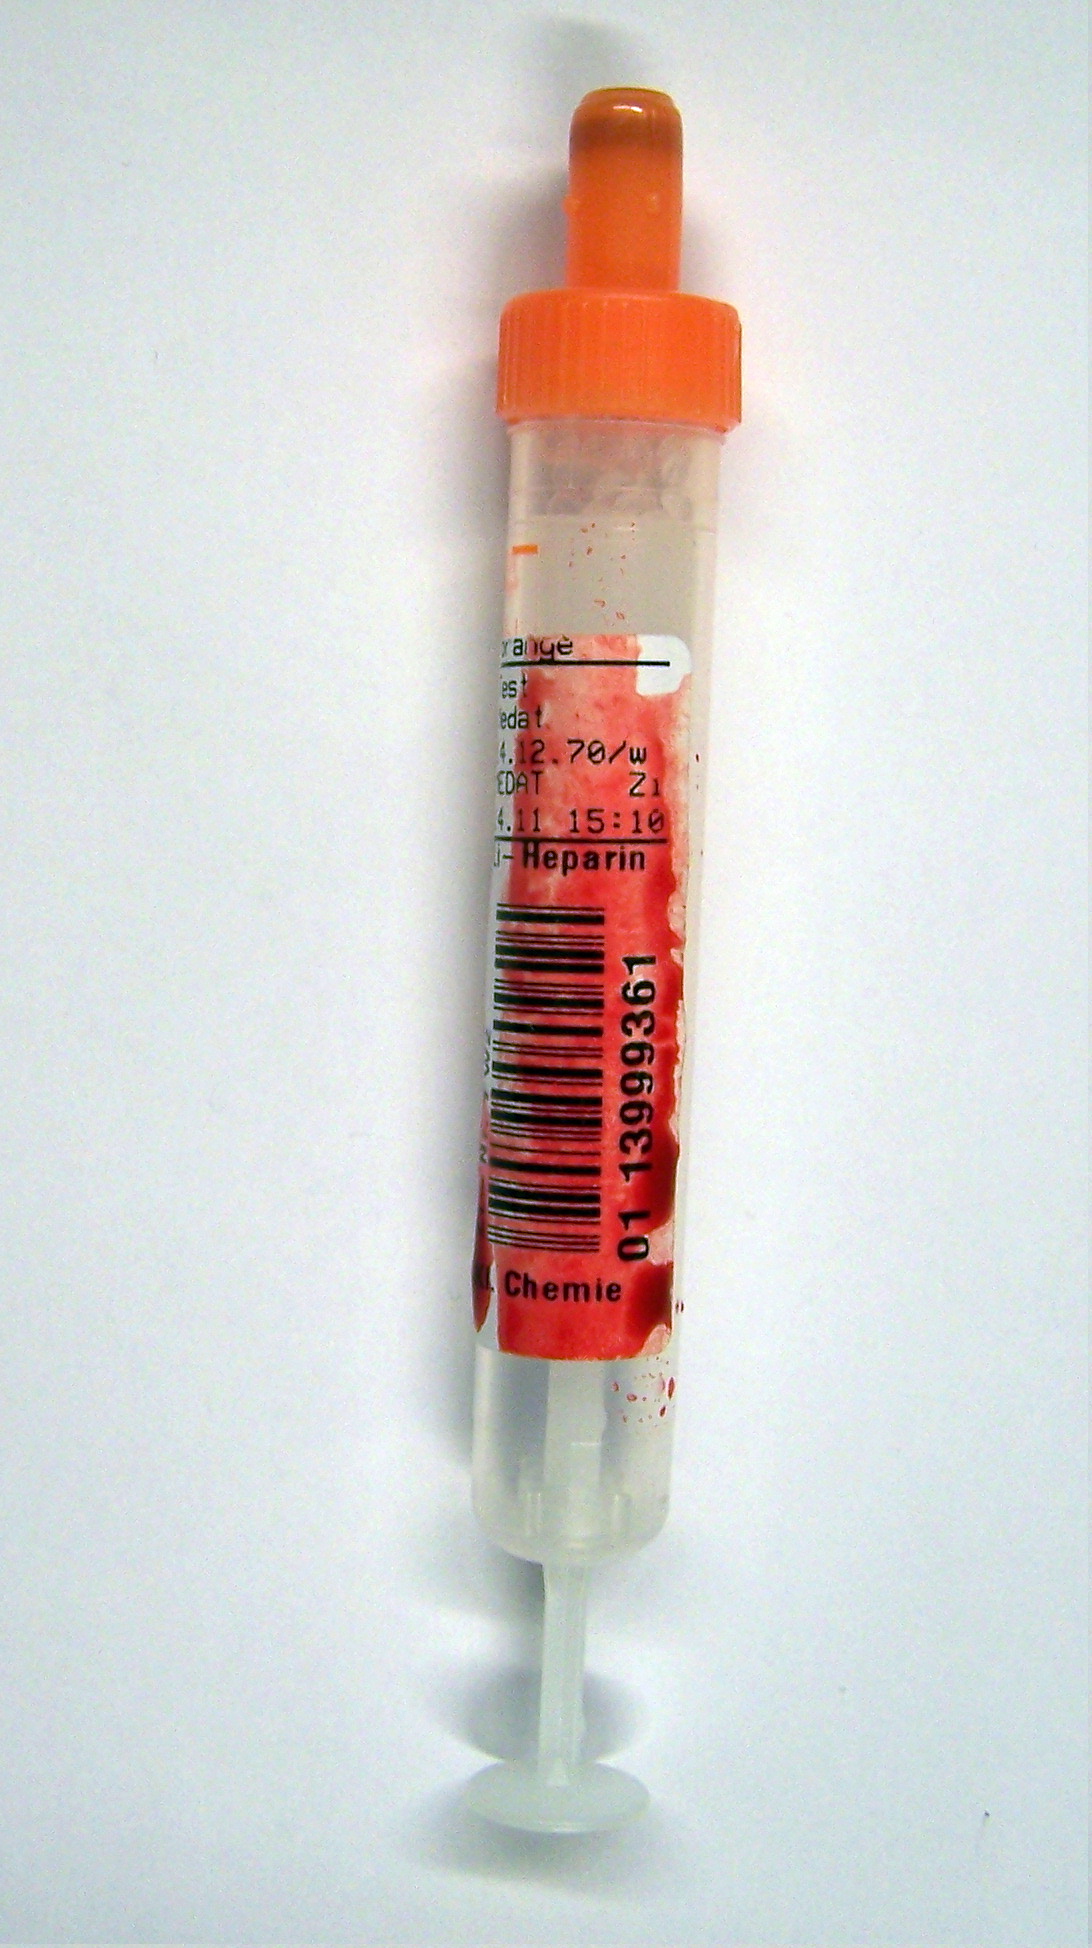 Bild einer 1,8 ml Serummonovette, das Etikett ist vollständig mit getrocknetem Blut bedeckt.